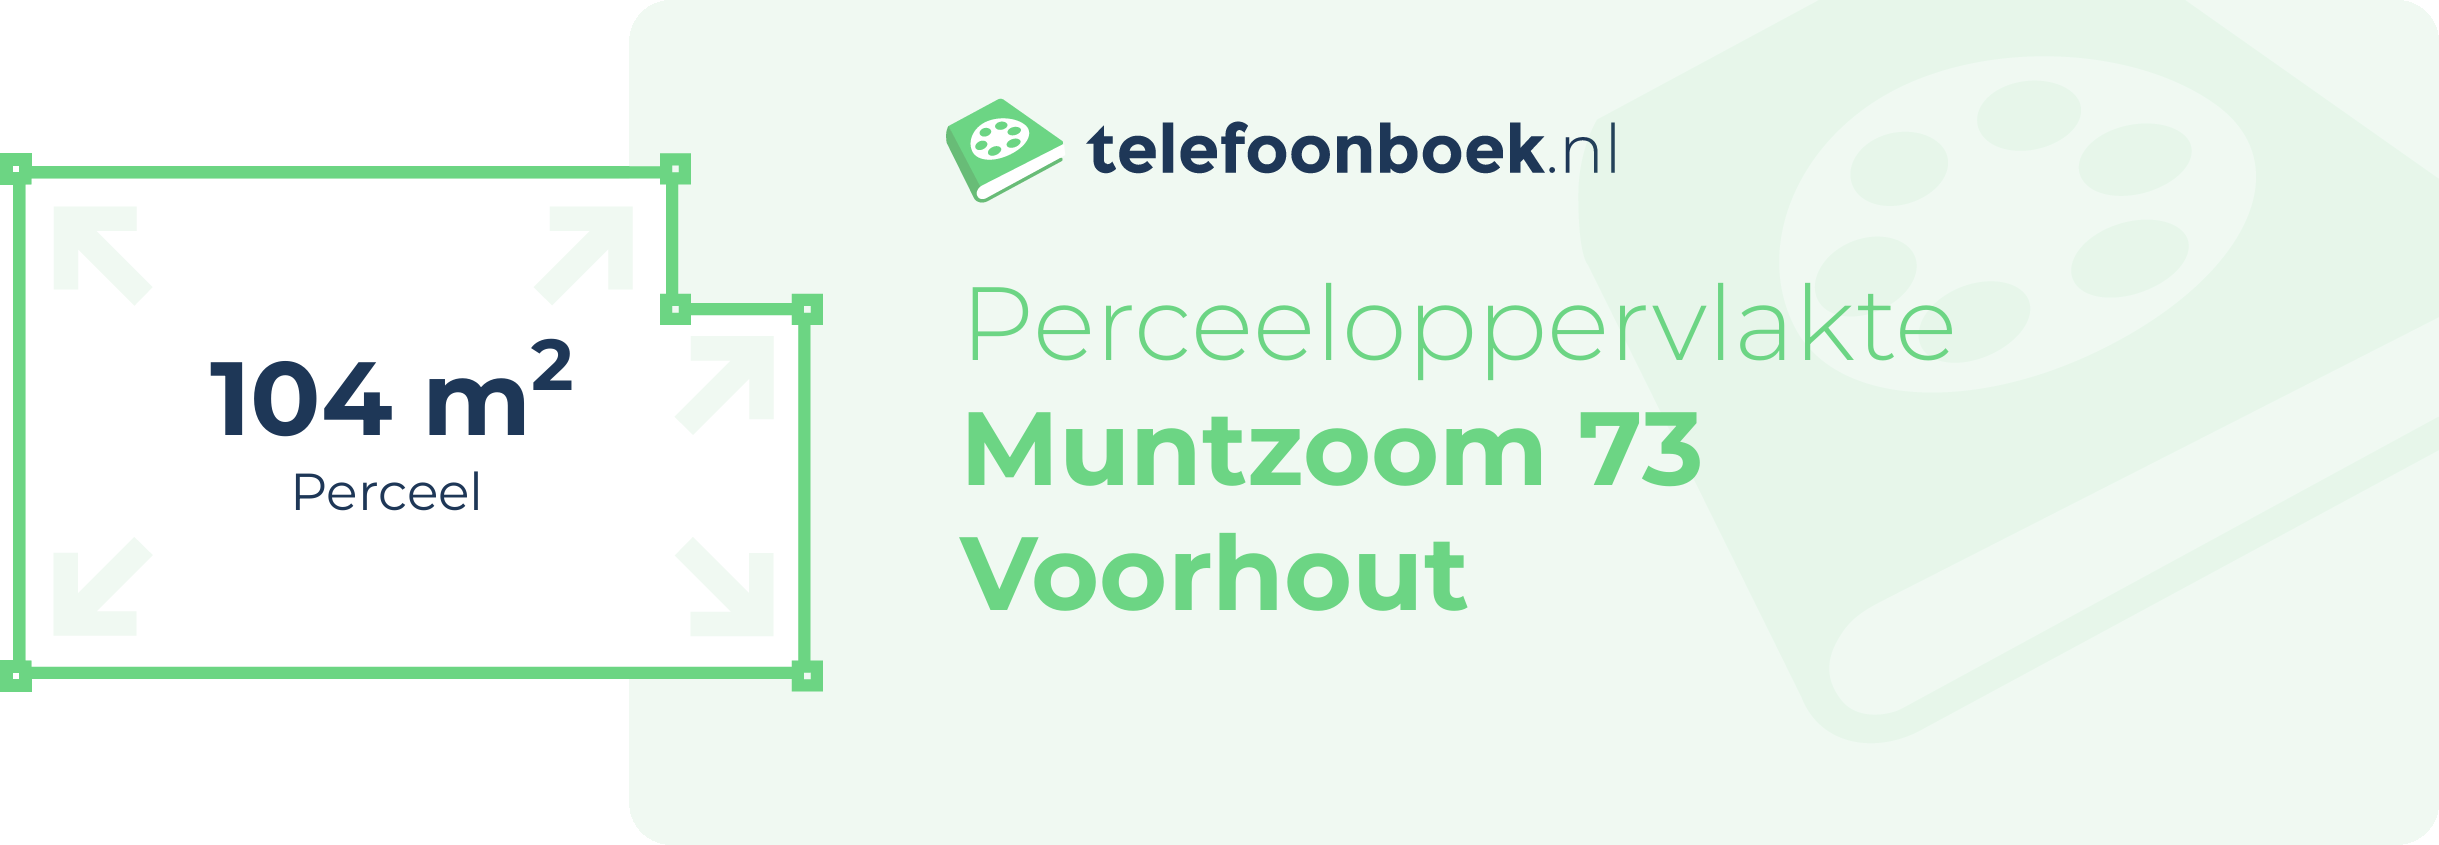 Perceeloppervlakte Muntzoom 73 Voorhout